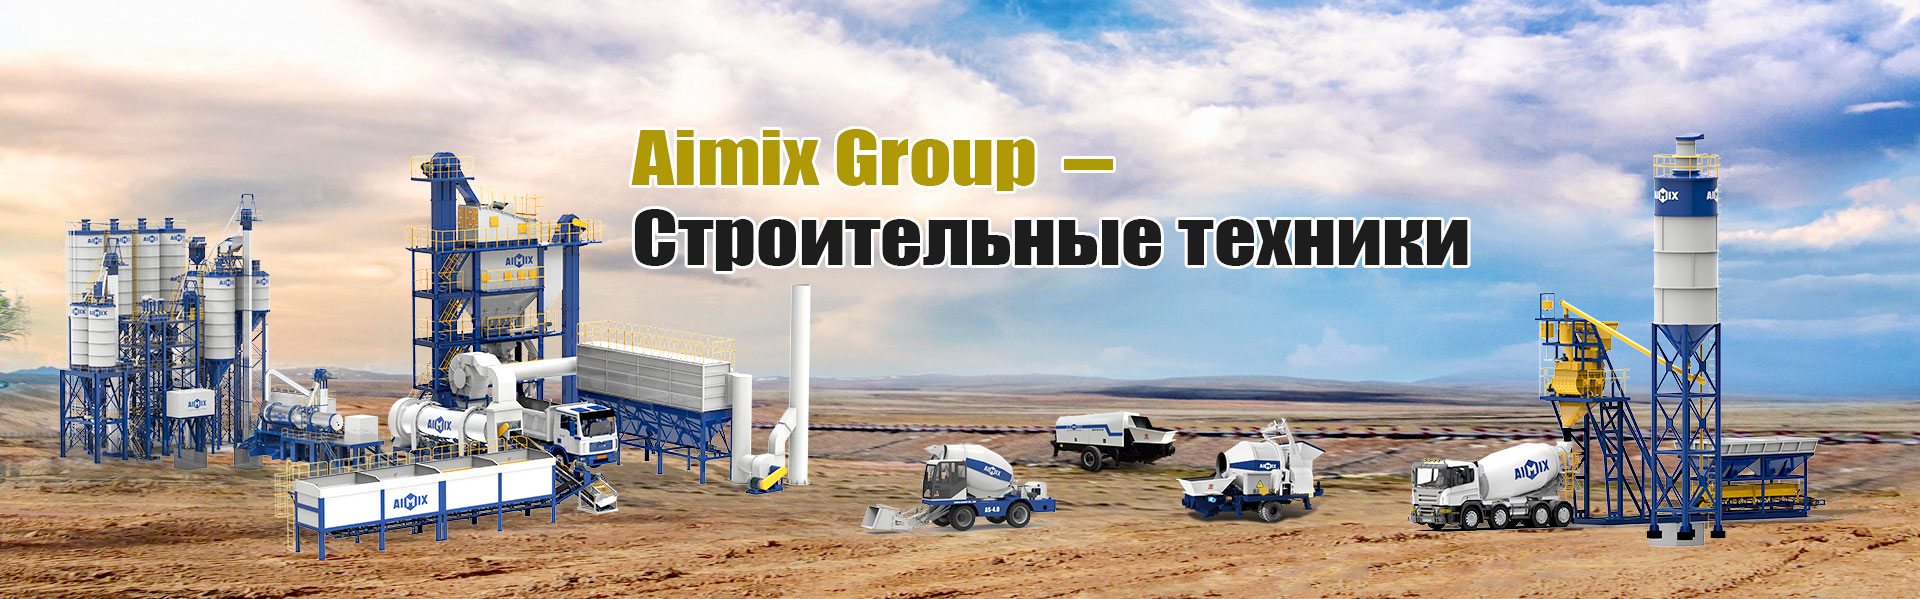 Aimix Group Строительные техники